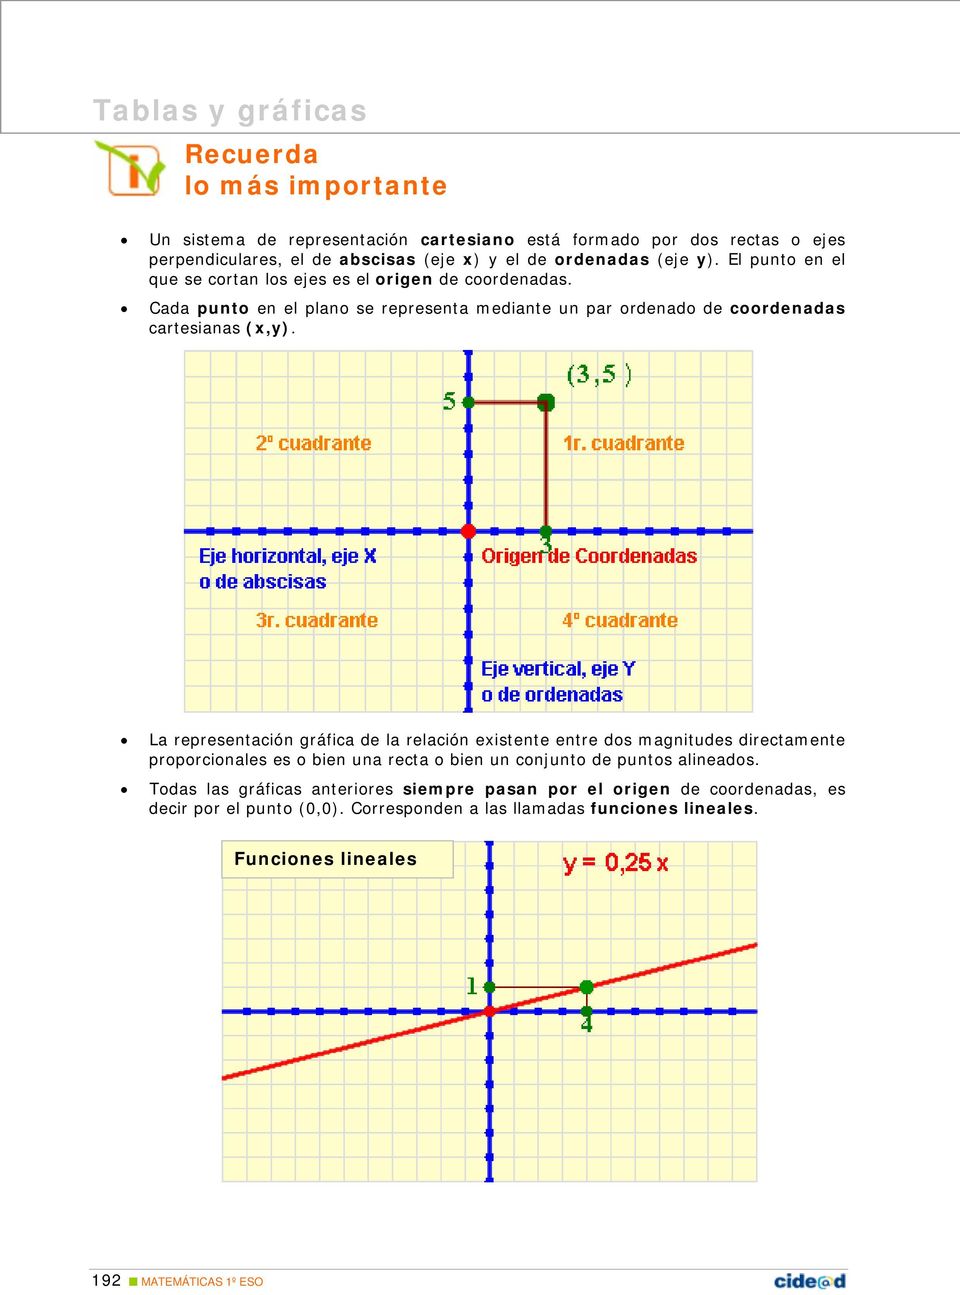 La representación gráfica de la relación existente entre dos magnitudes directamente proporcionales es o bien una recta o bien un conjunto de puntos alineados.